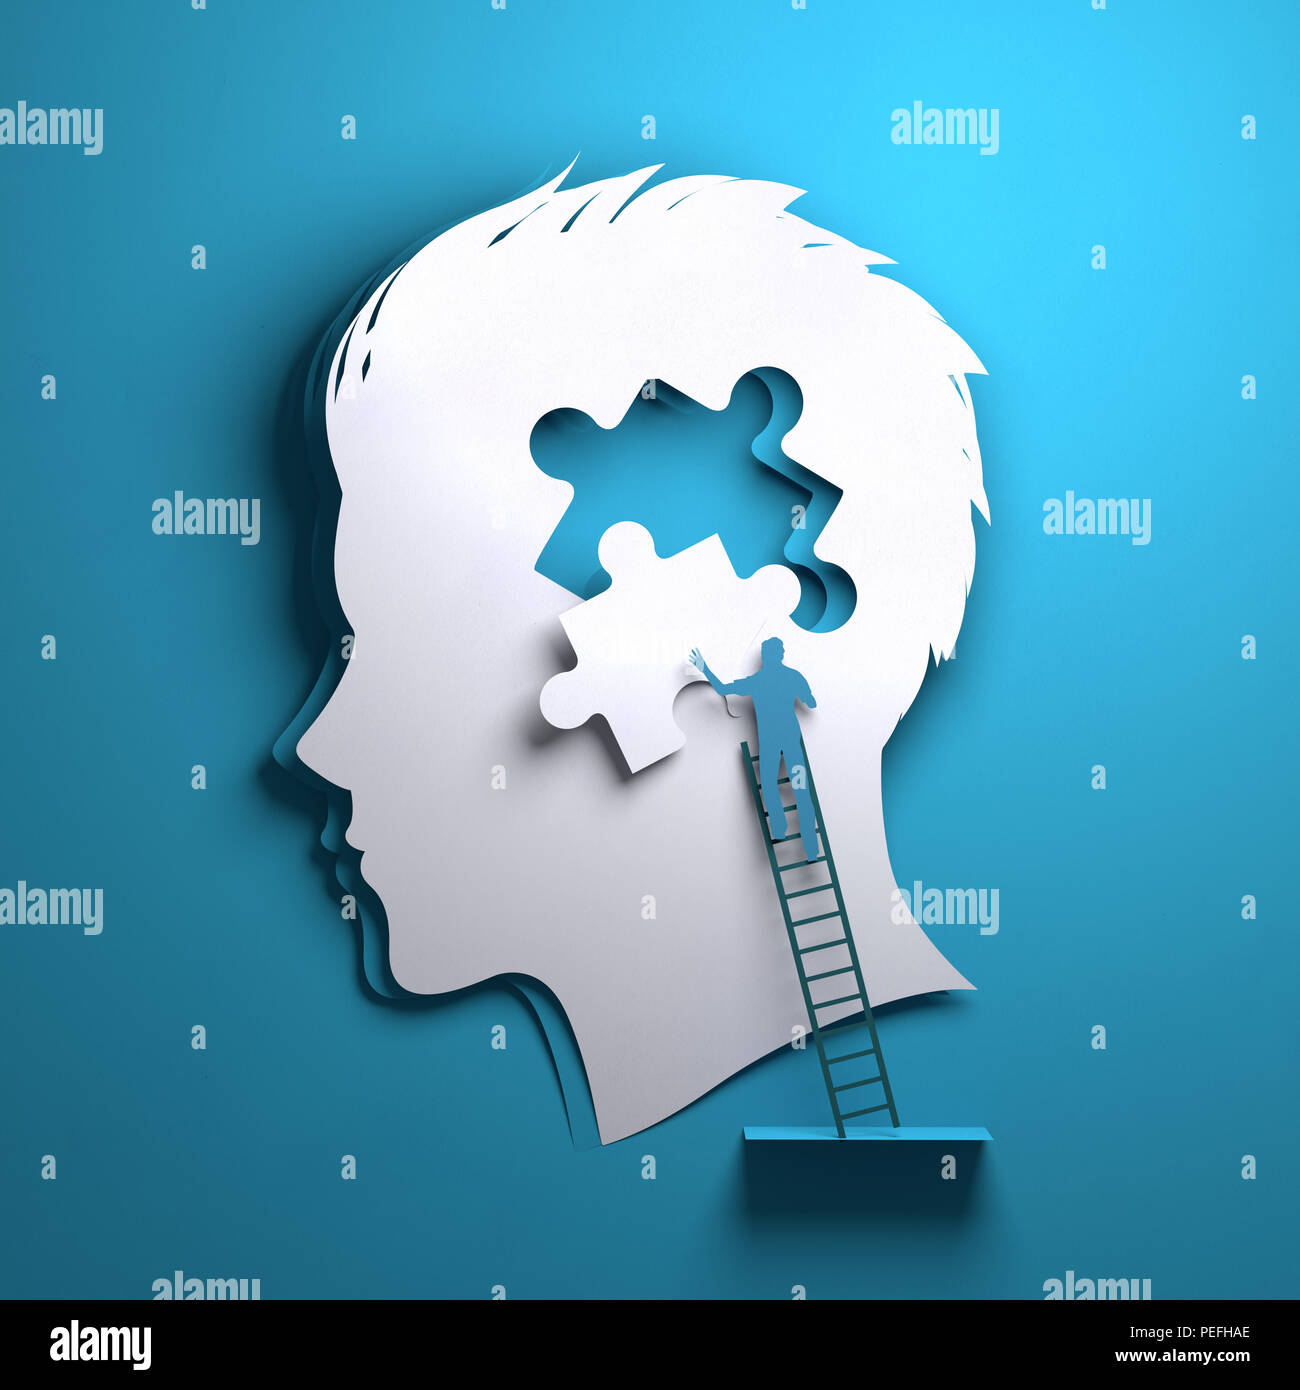 Papier plié origami. La silhouette d'un homme avec une personne responsable de l'ajout d'un morceau de puzzle. Mindfulness conceptuel 3D illustration. Banque D'Images